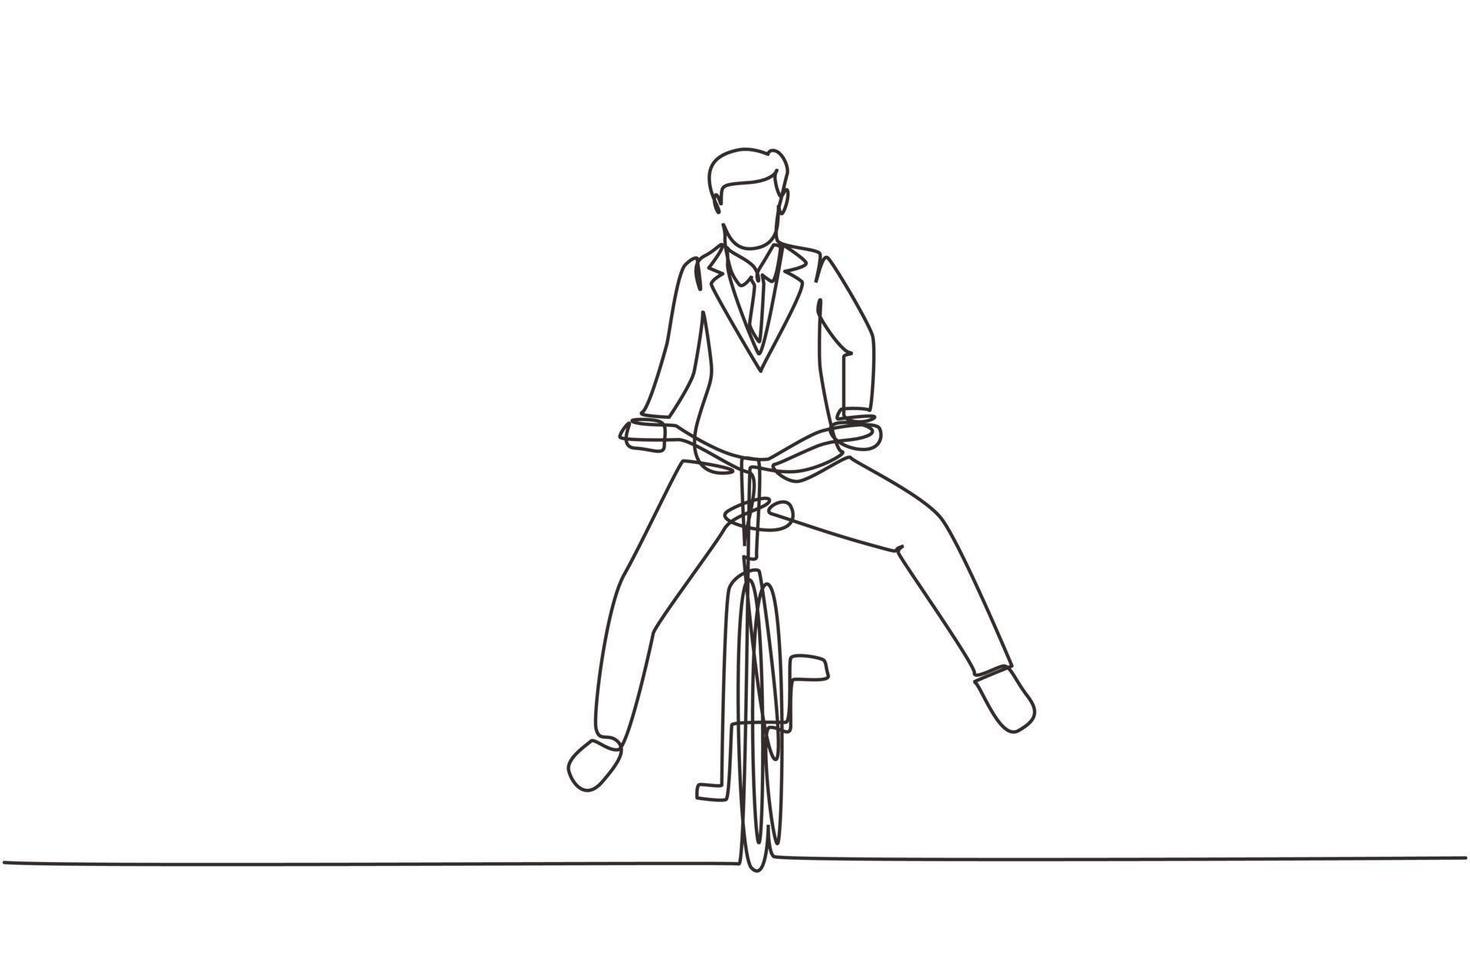 enkele een lijntekening gelukkige jonge man met pak naar huwelijksfeest fietsen. ecologisch, gezond transportmiddel. doorlopende lijn tekenen ontwerp grafische vectorillustratie vector